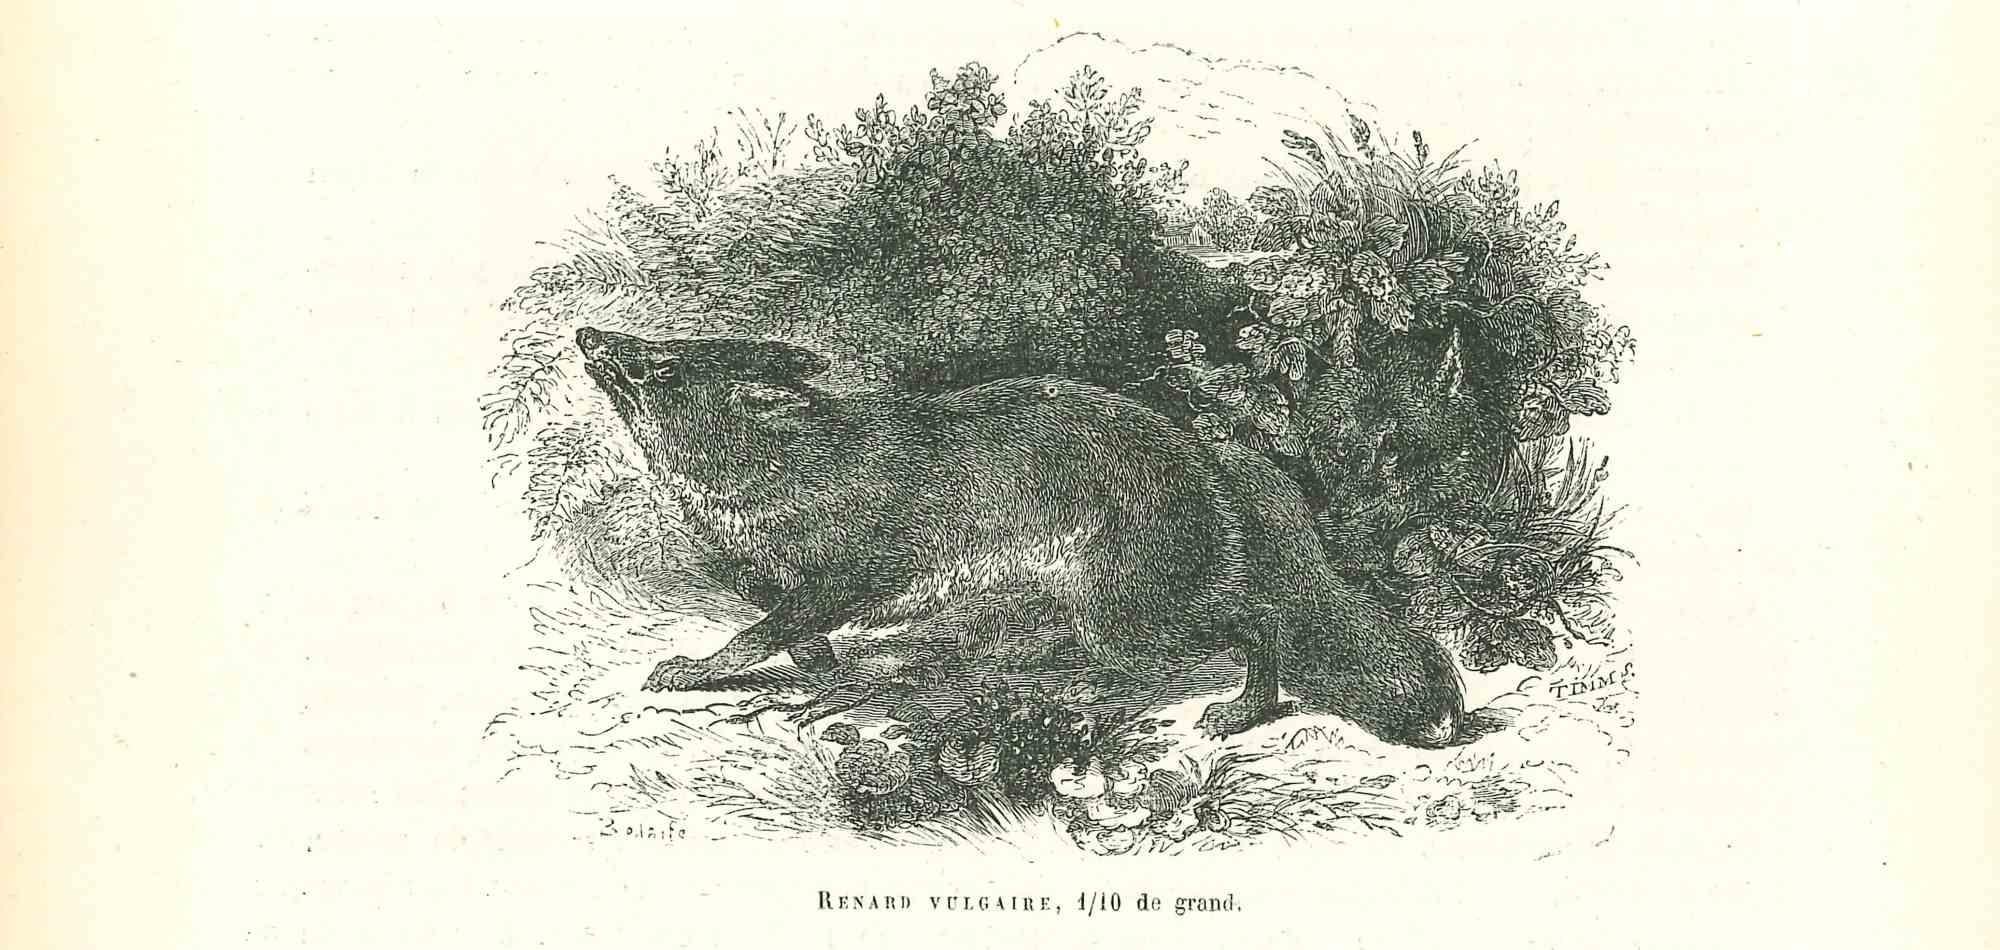 Le loup - Lithographie de Paul Gervais - 1854